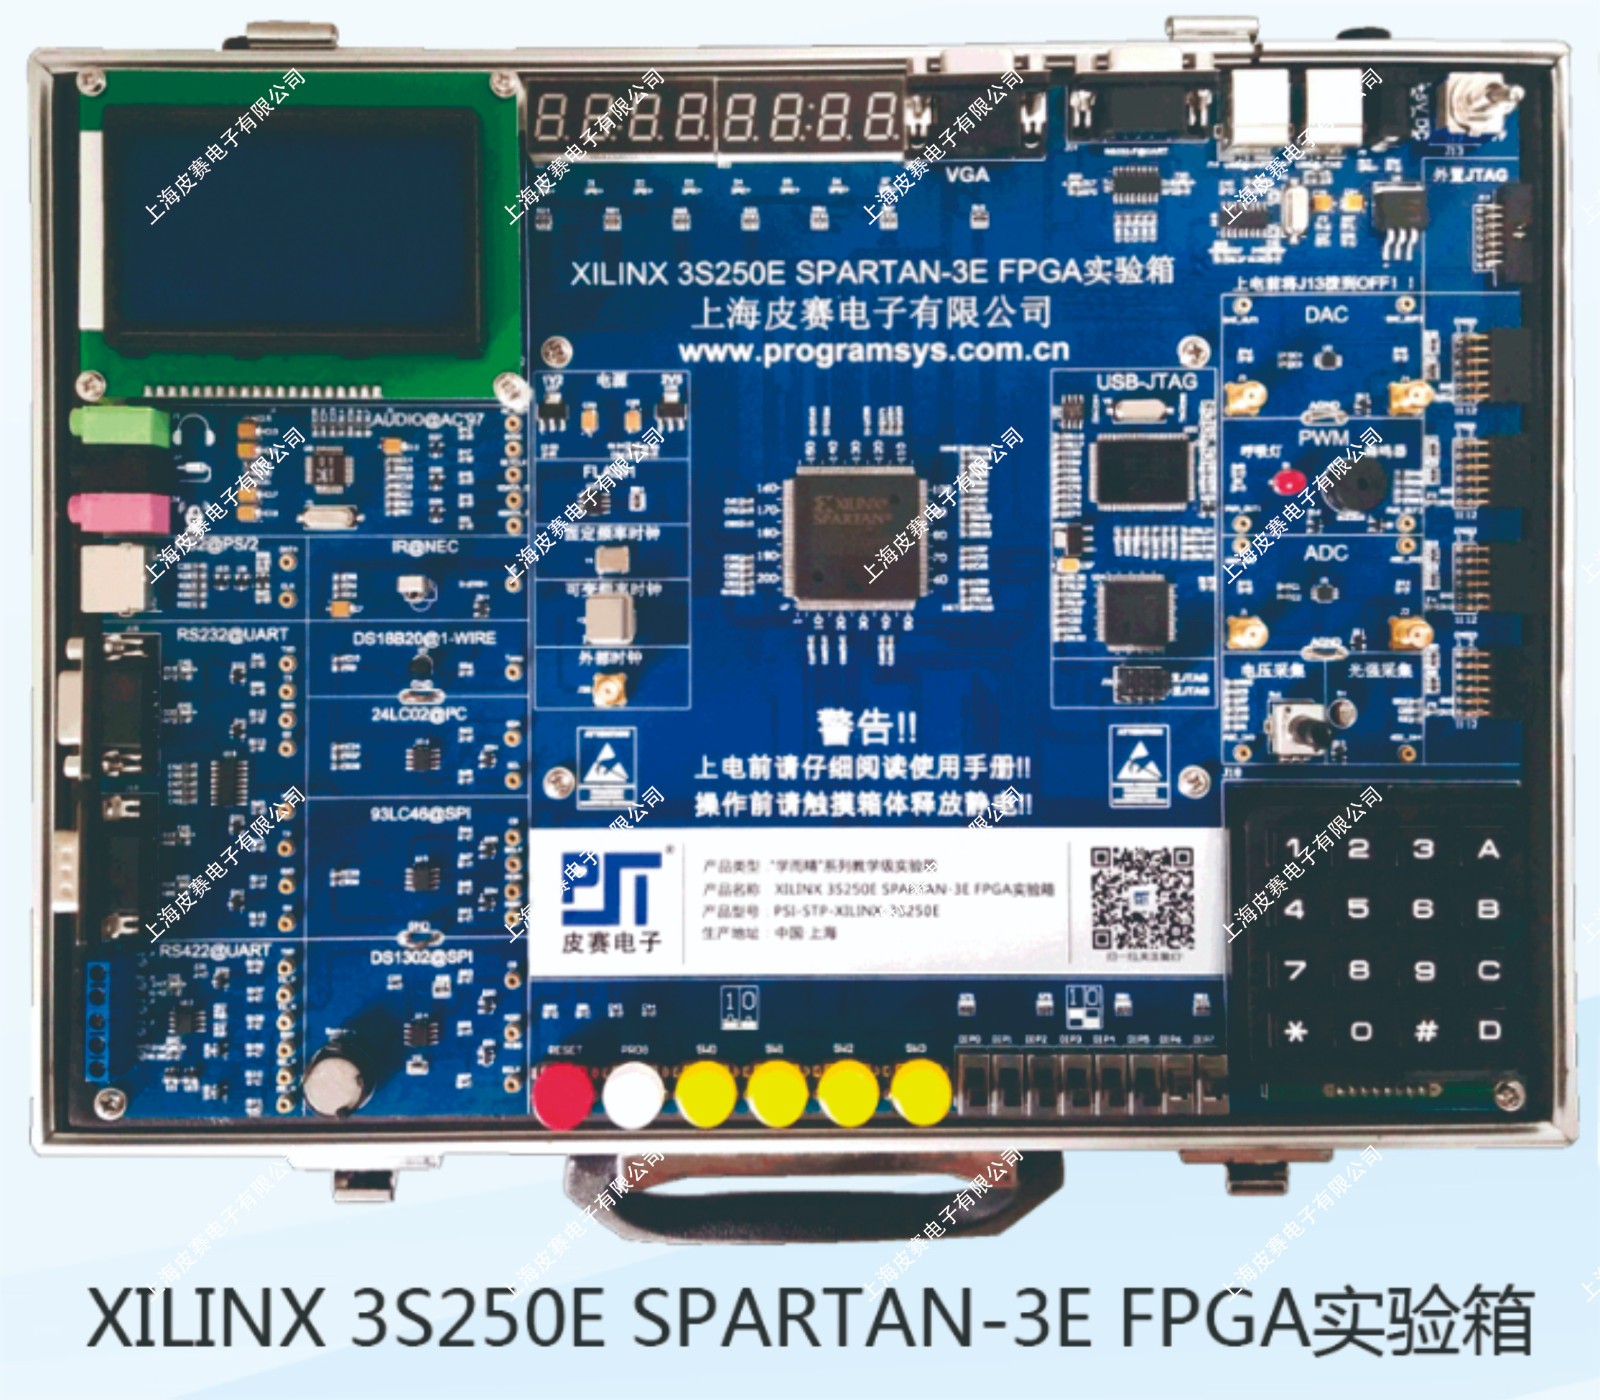 XILINX 3S250E SPARTAN-3E FPGA实验箱